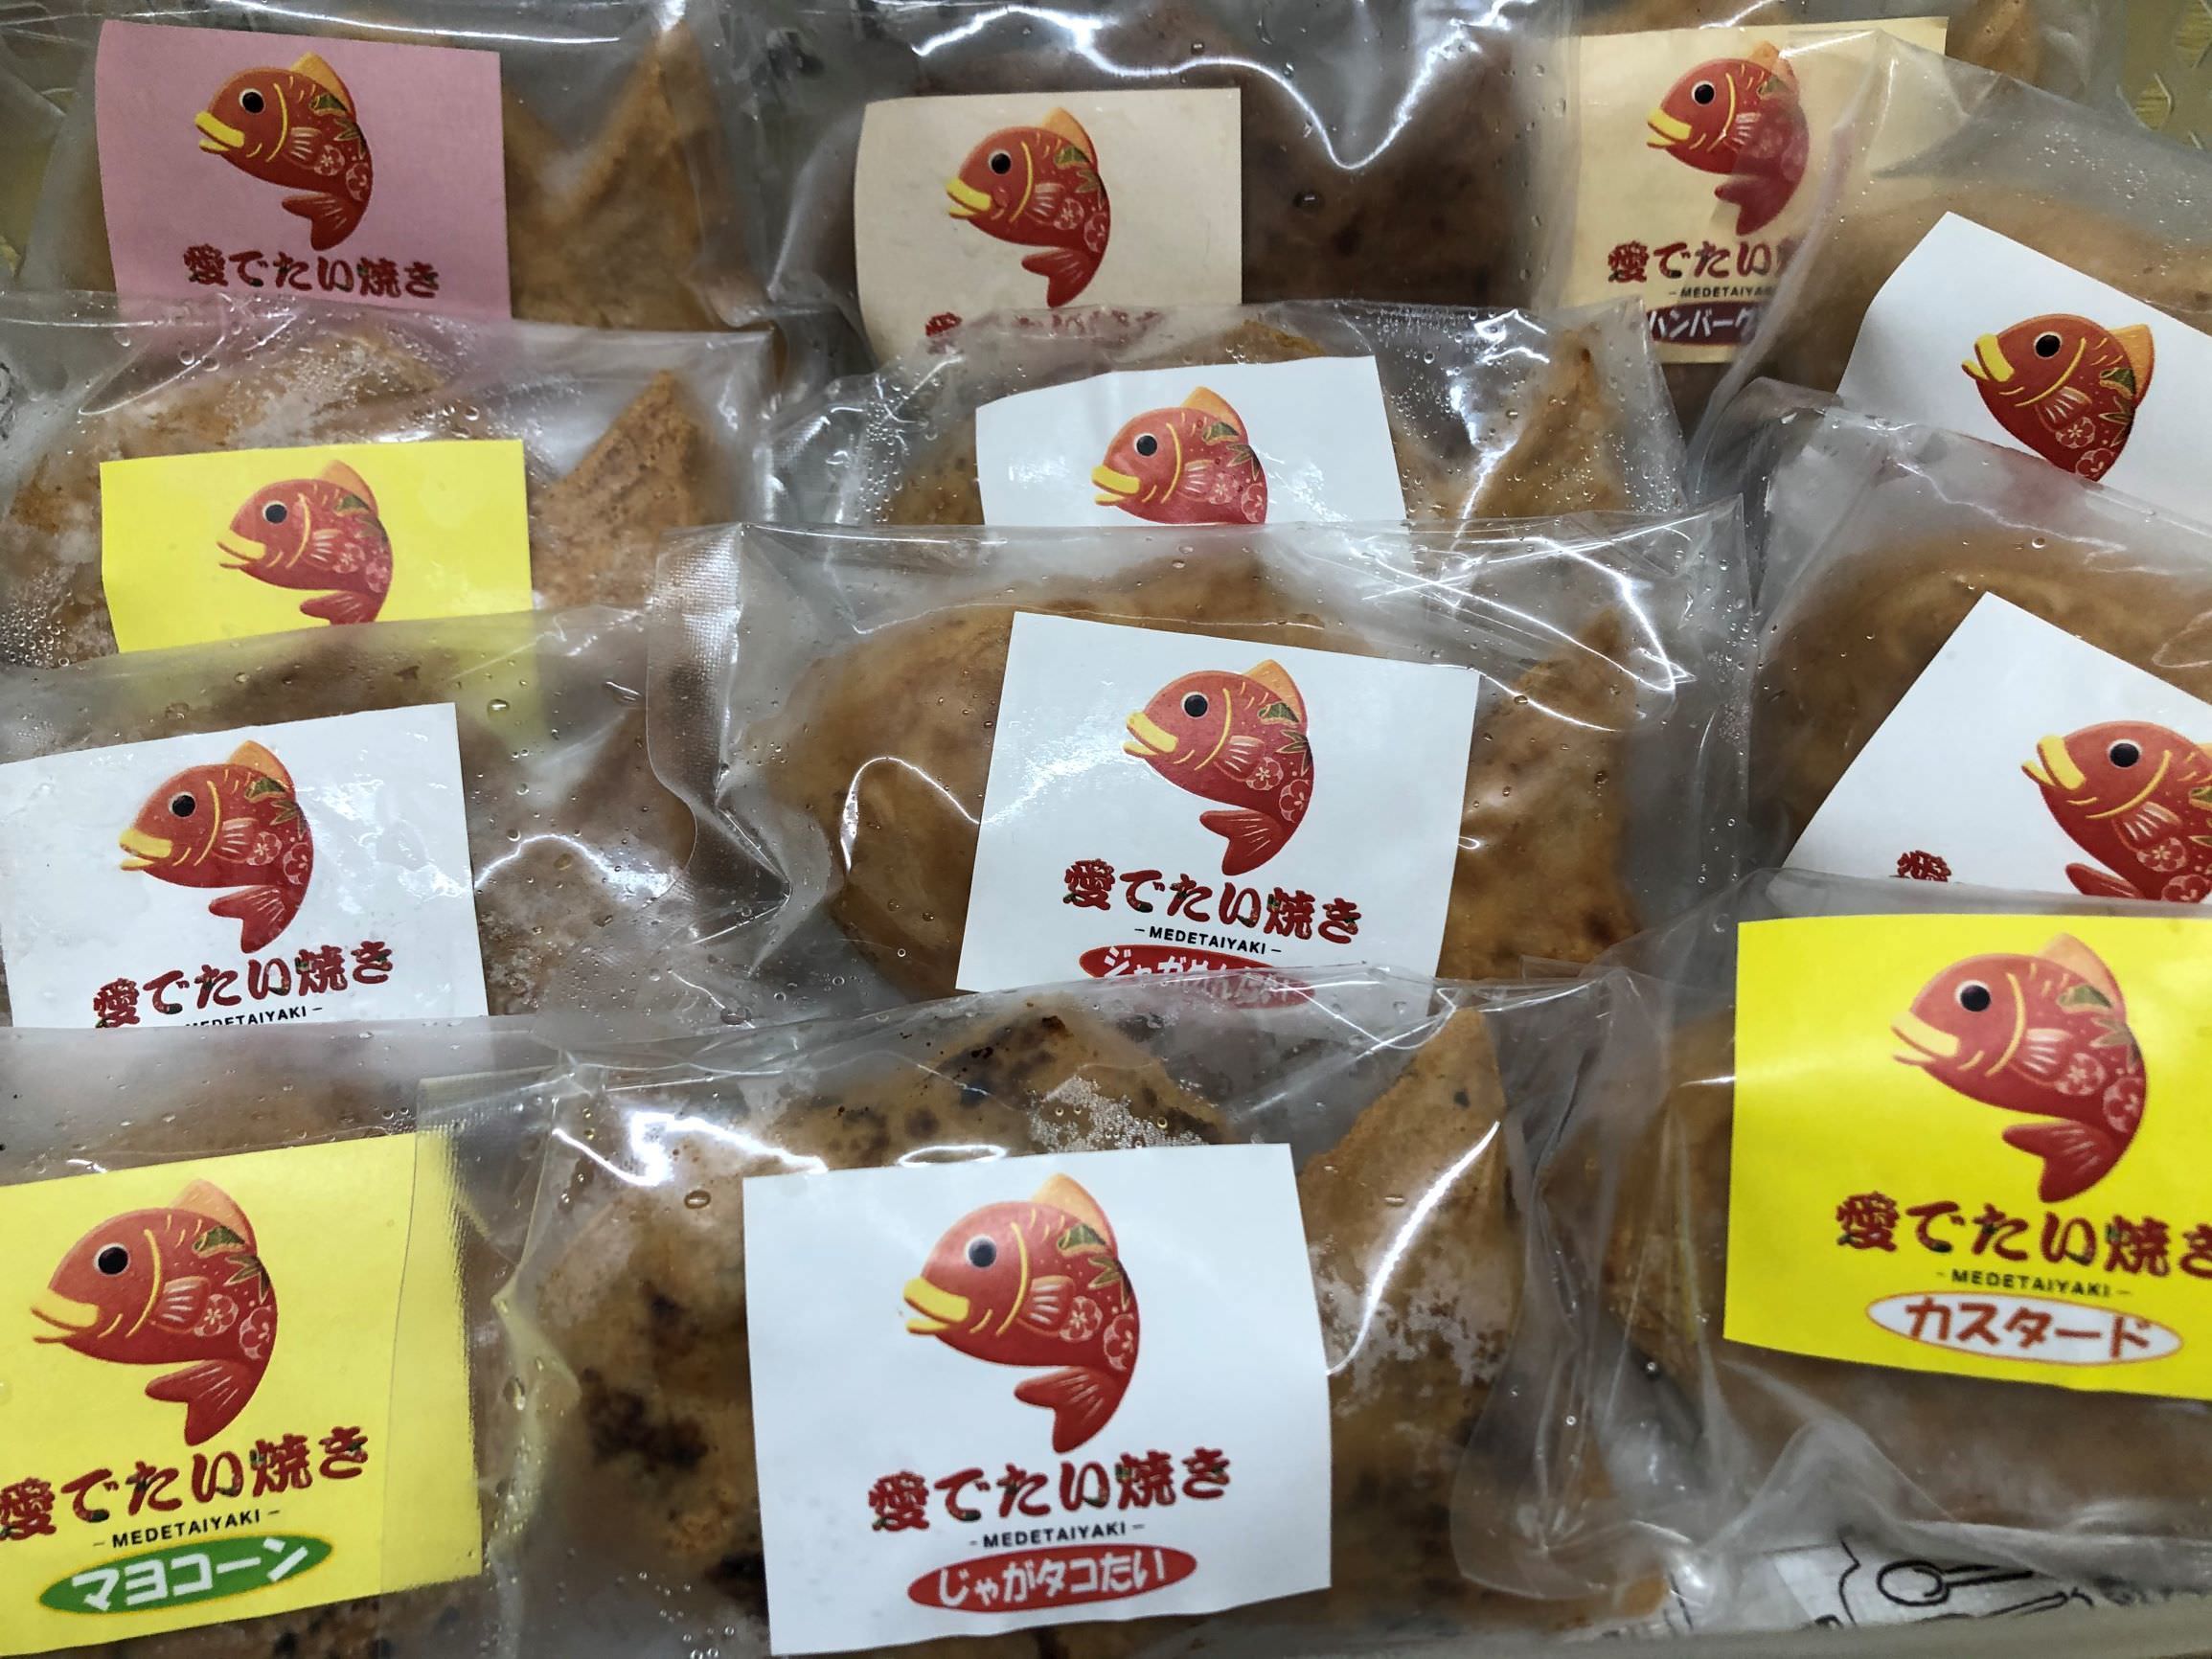 『小さいパンおいしいまま』
パンをおいしく保存するために開発された袋の小サイズ品が9/1発売